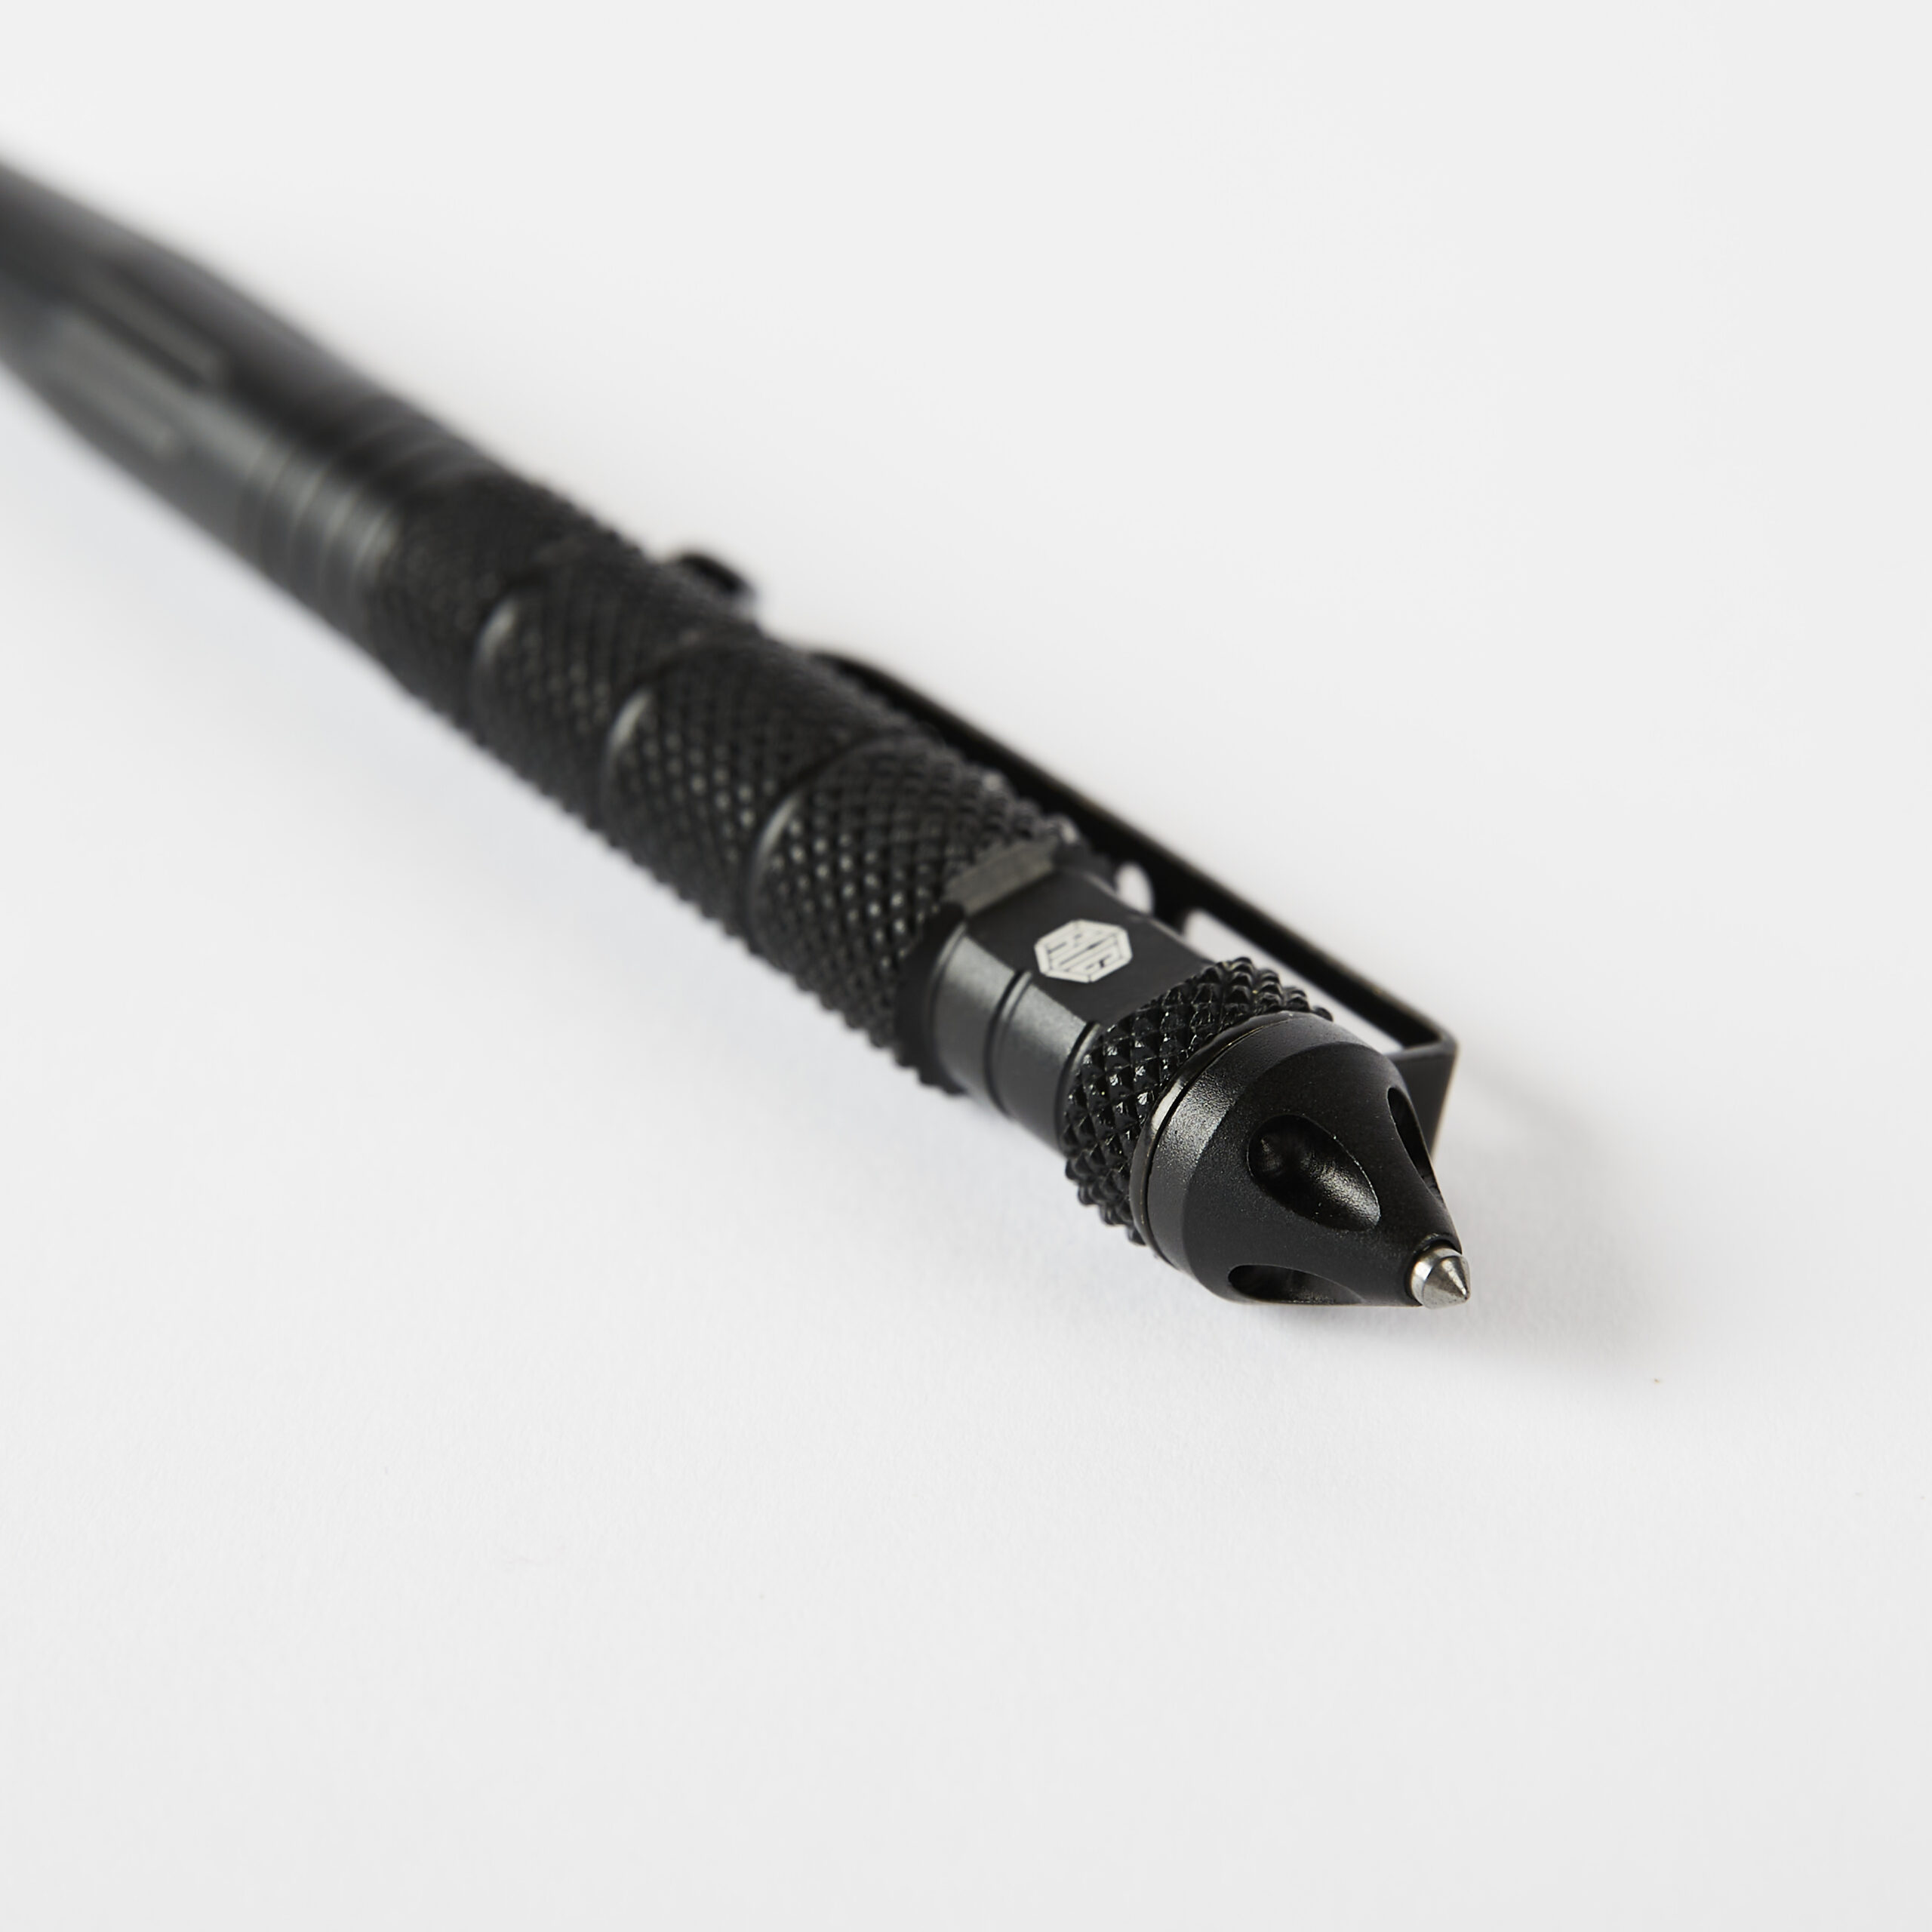 Tactical Pen Glass Breaker  Window Breaker Tool - Grey Technologies